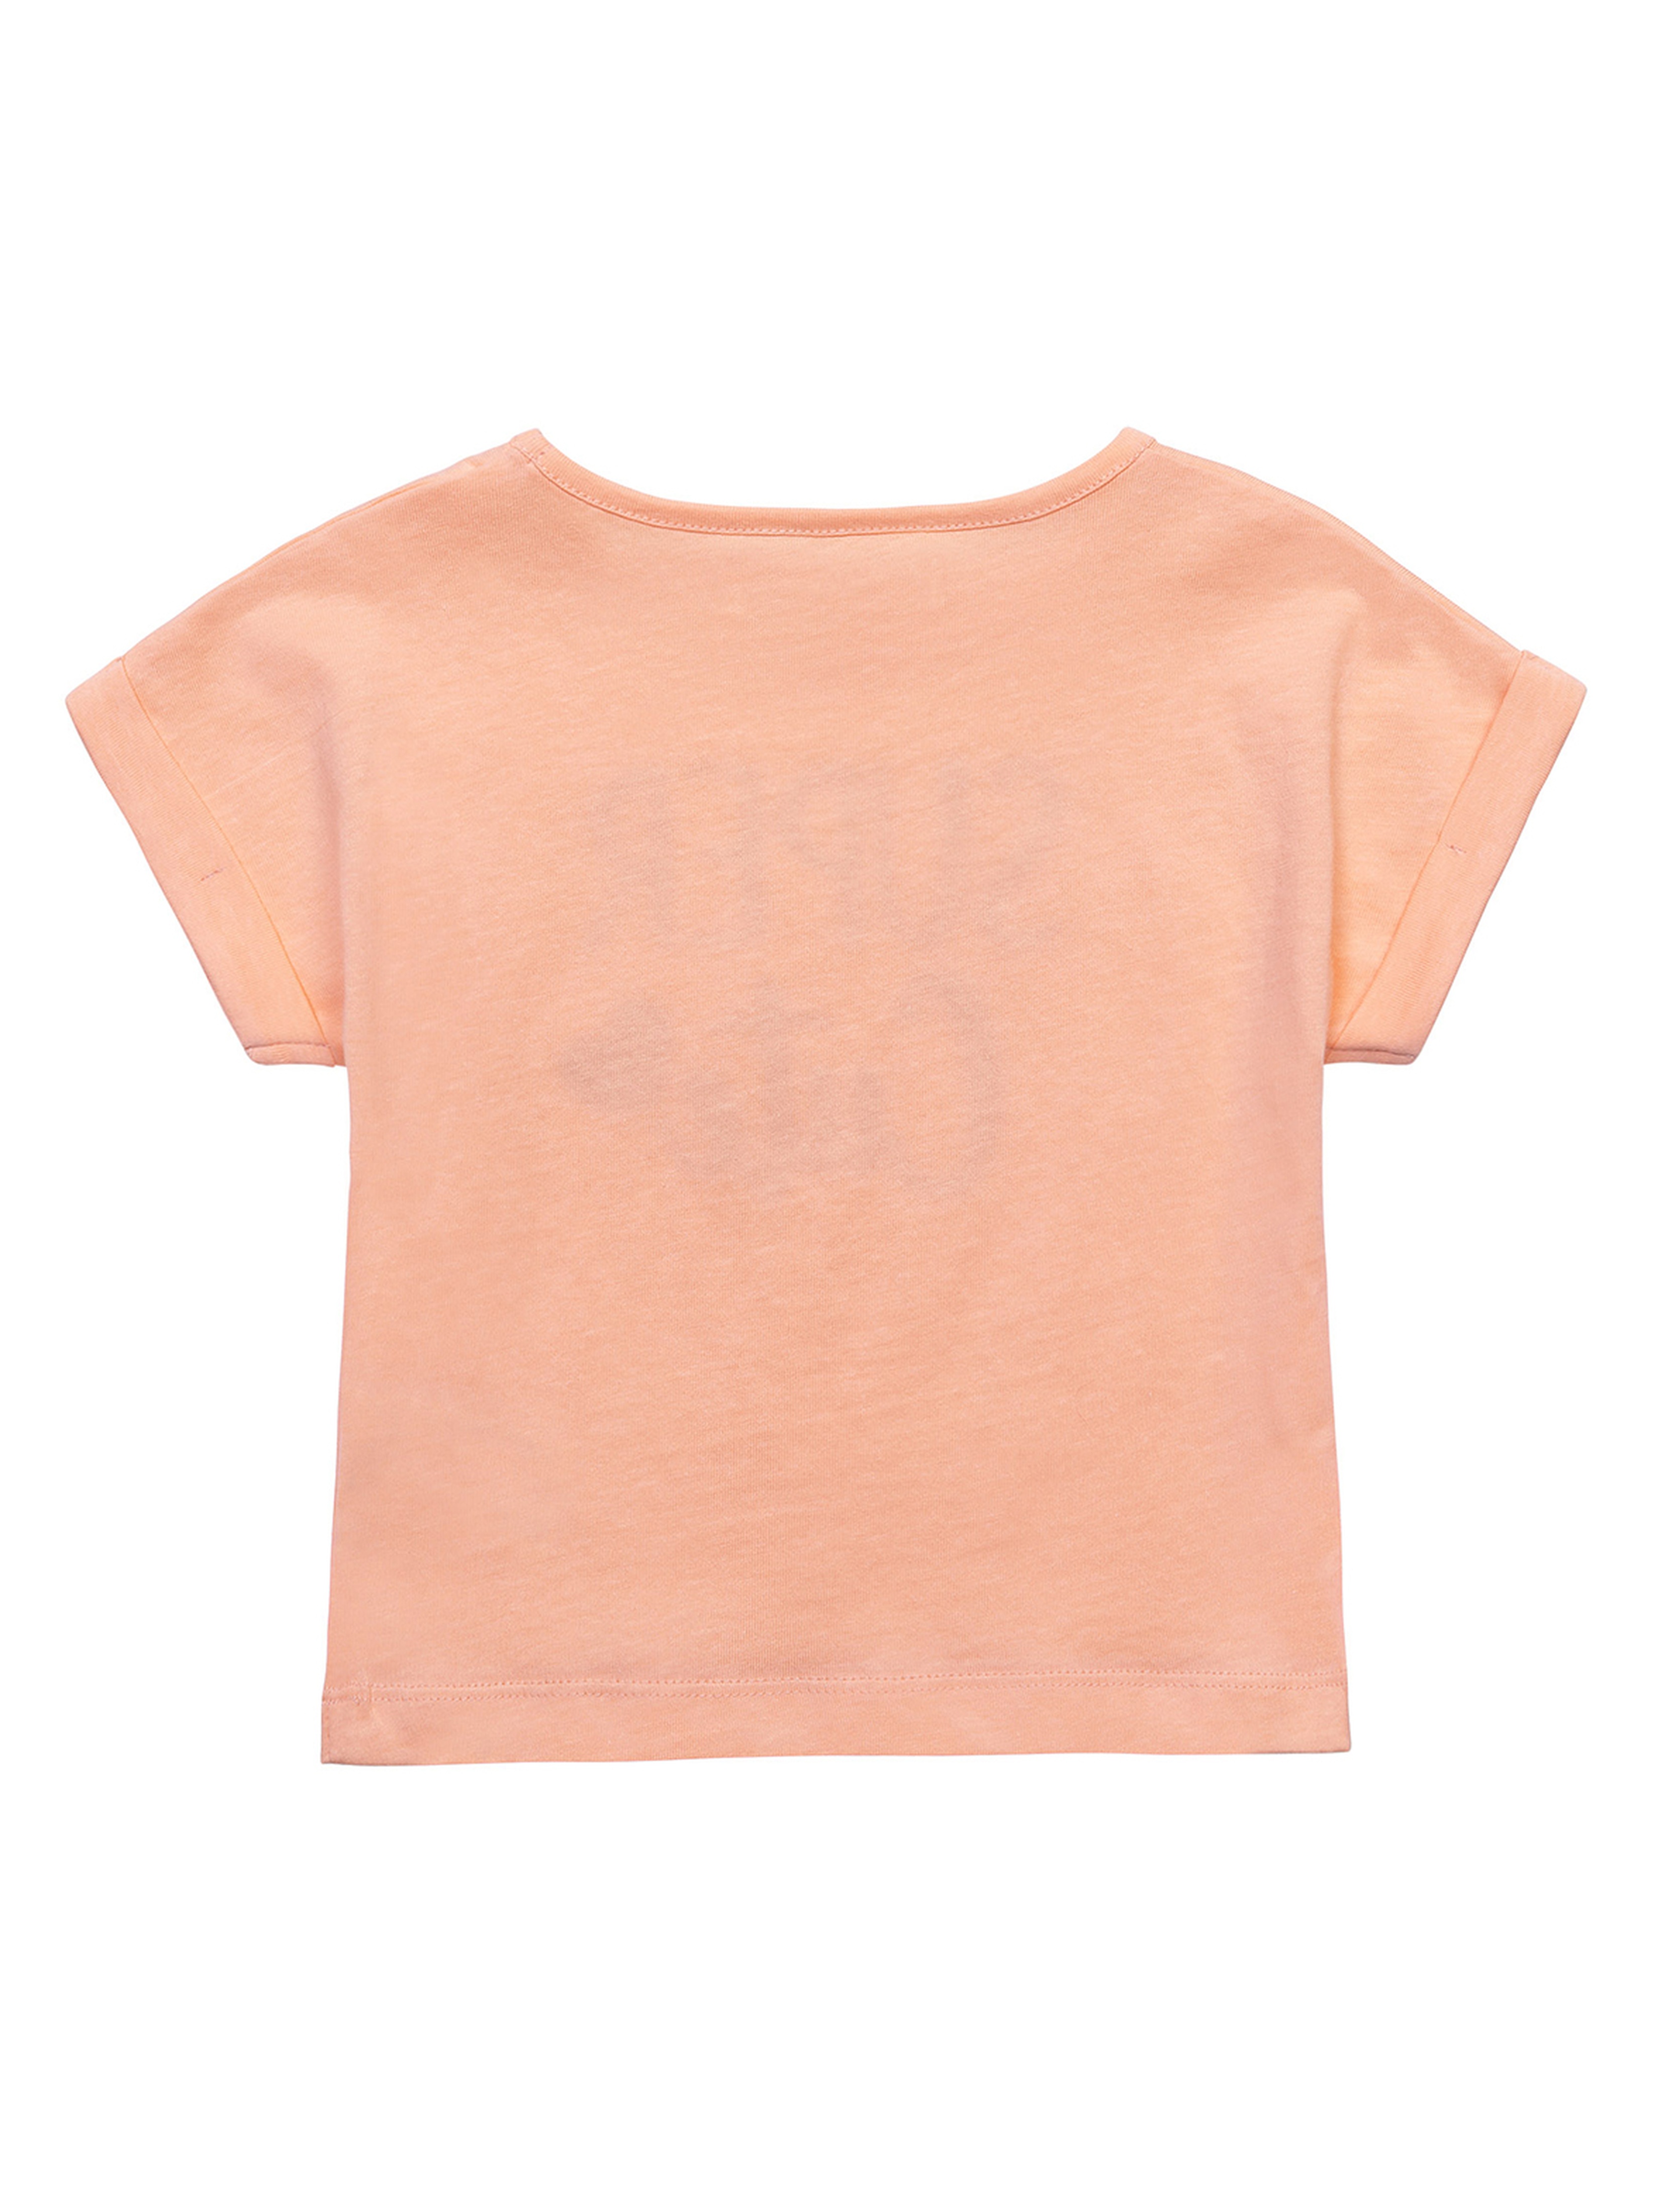 Bawełniany t-shirt pomarańczowy dziewczęcy- Super Cute